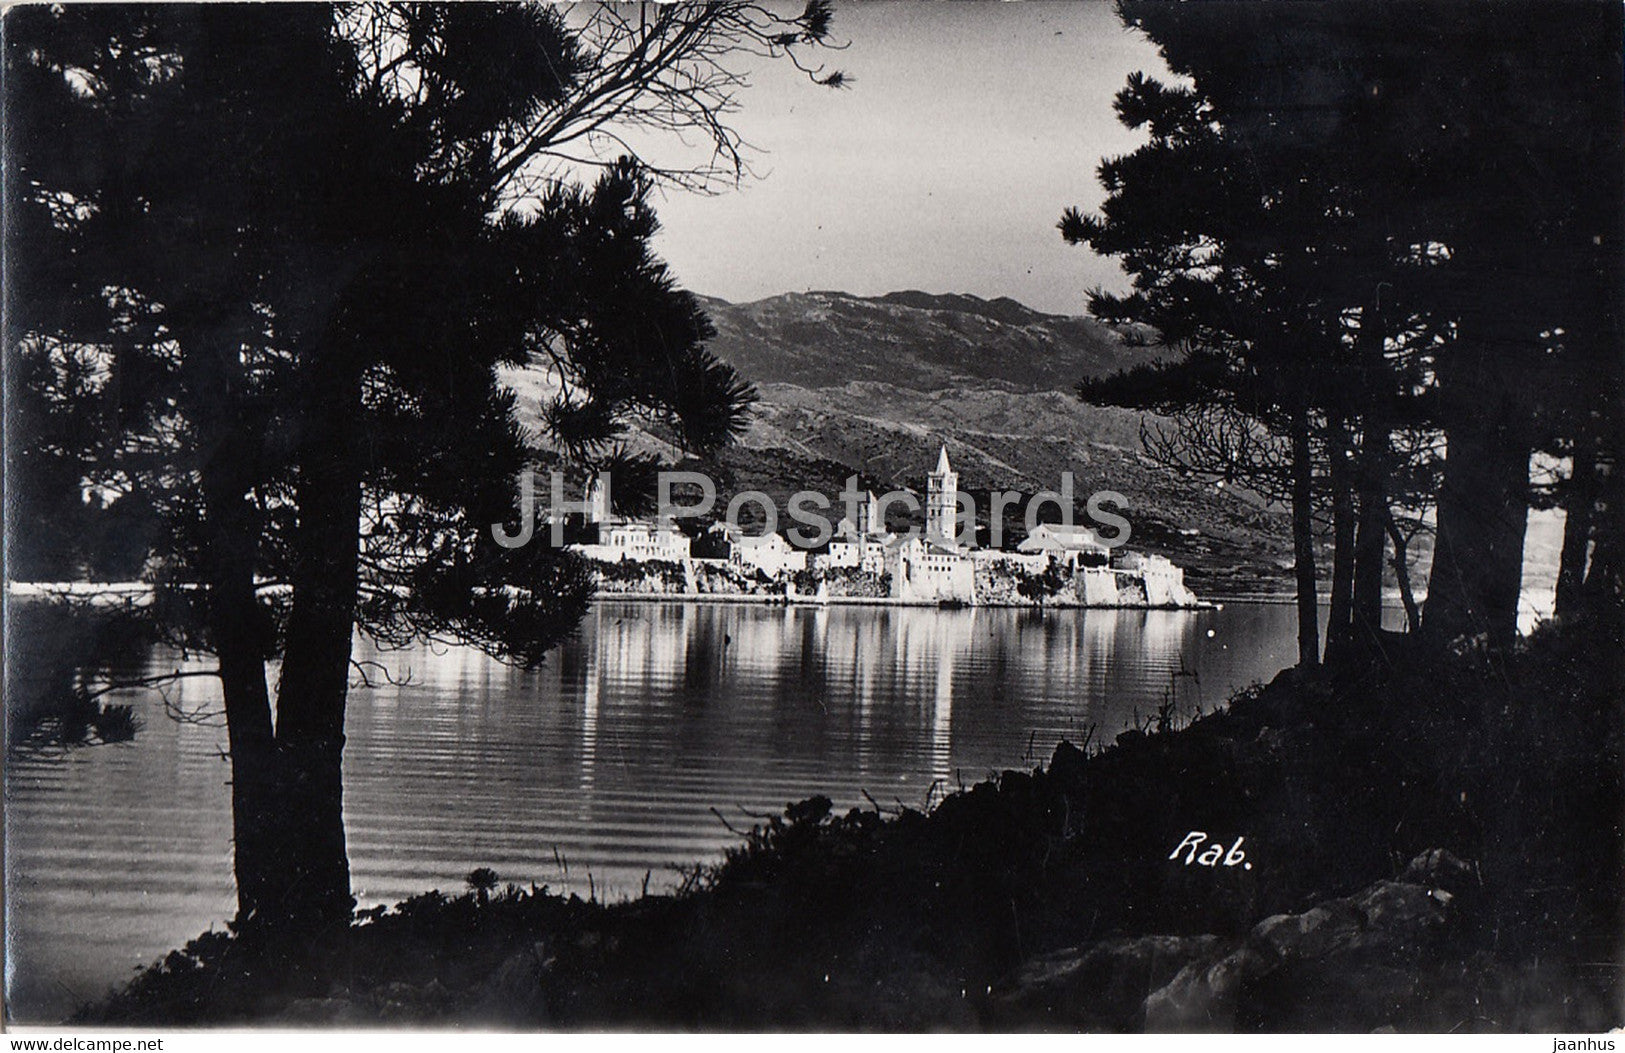 Rab - old postcard - 1939 - Croatia - used - JH Postcards